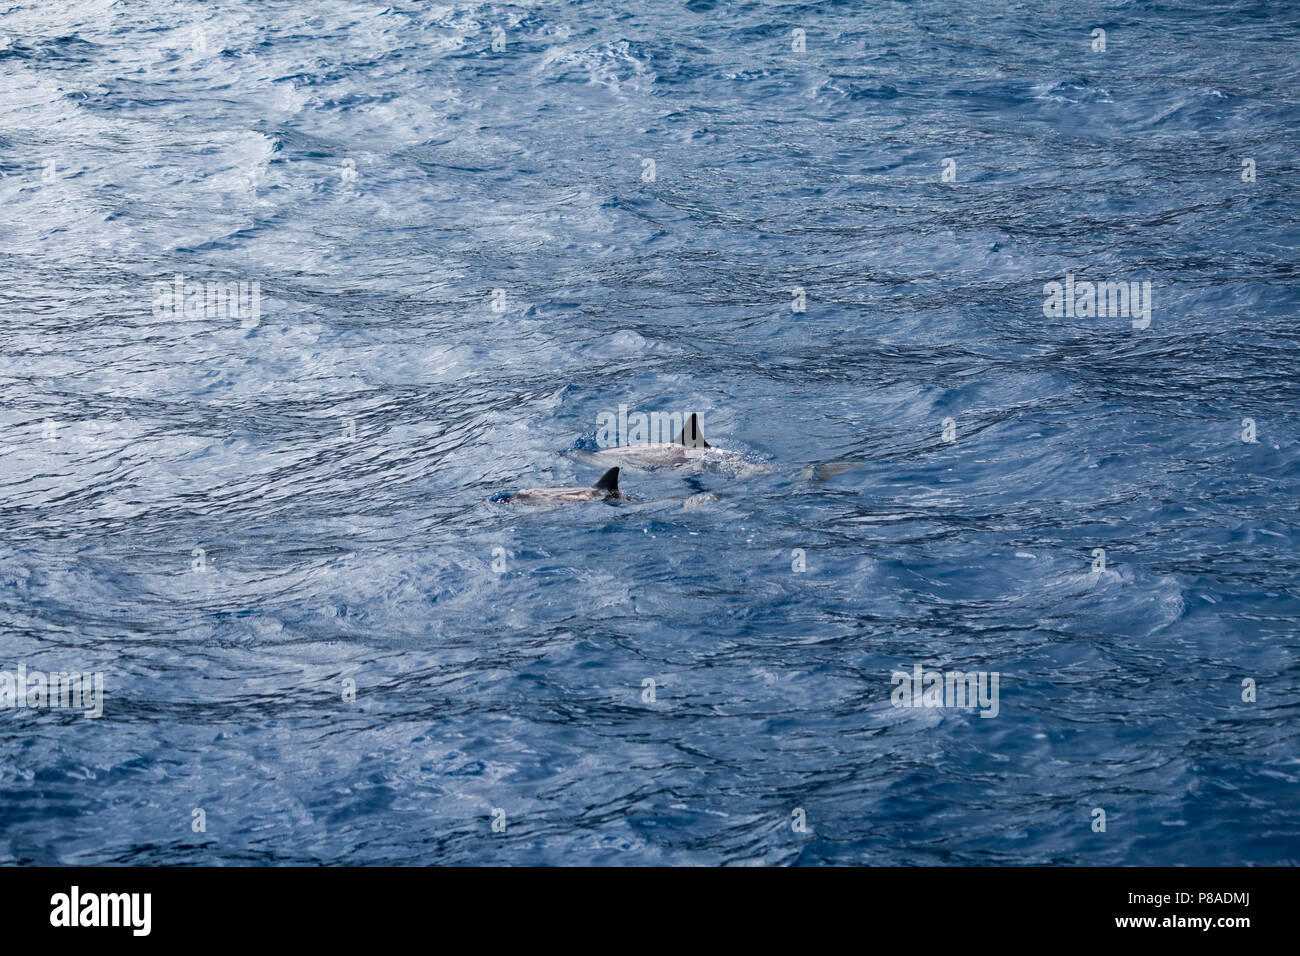 Wild Hawaiian Spinner delfini Stenella longirostris, nuotano liberamente al largo della costa della Lana'i. Foto Stock